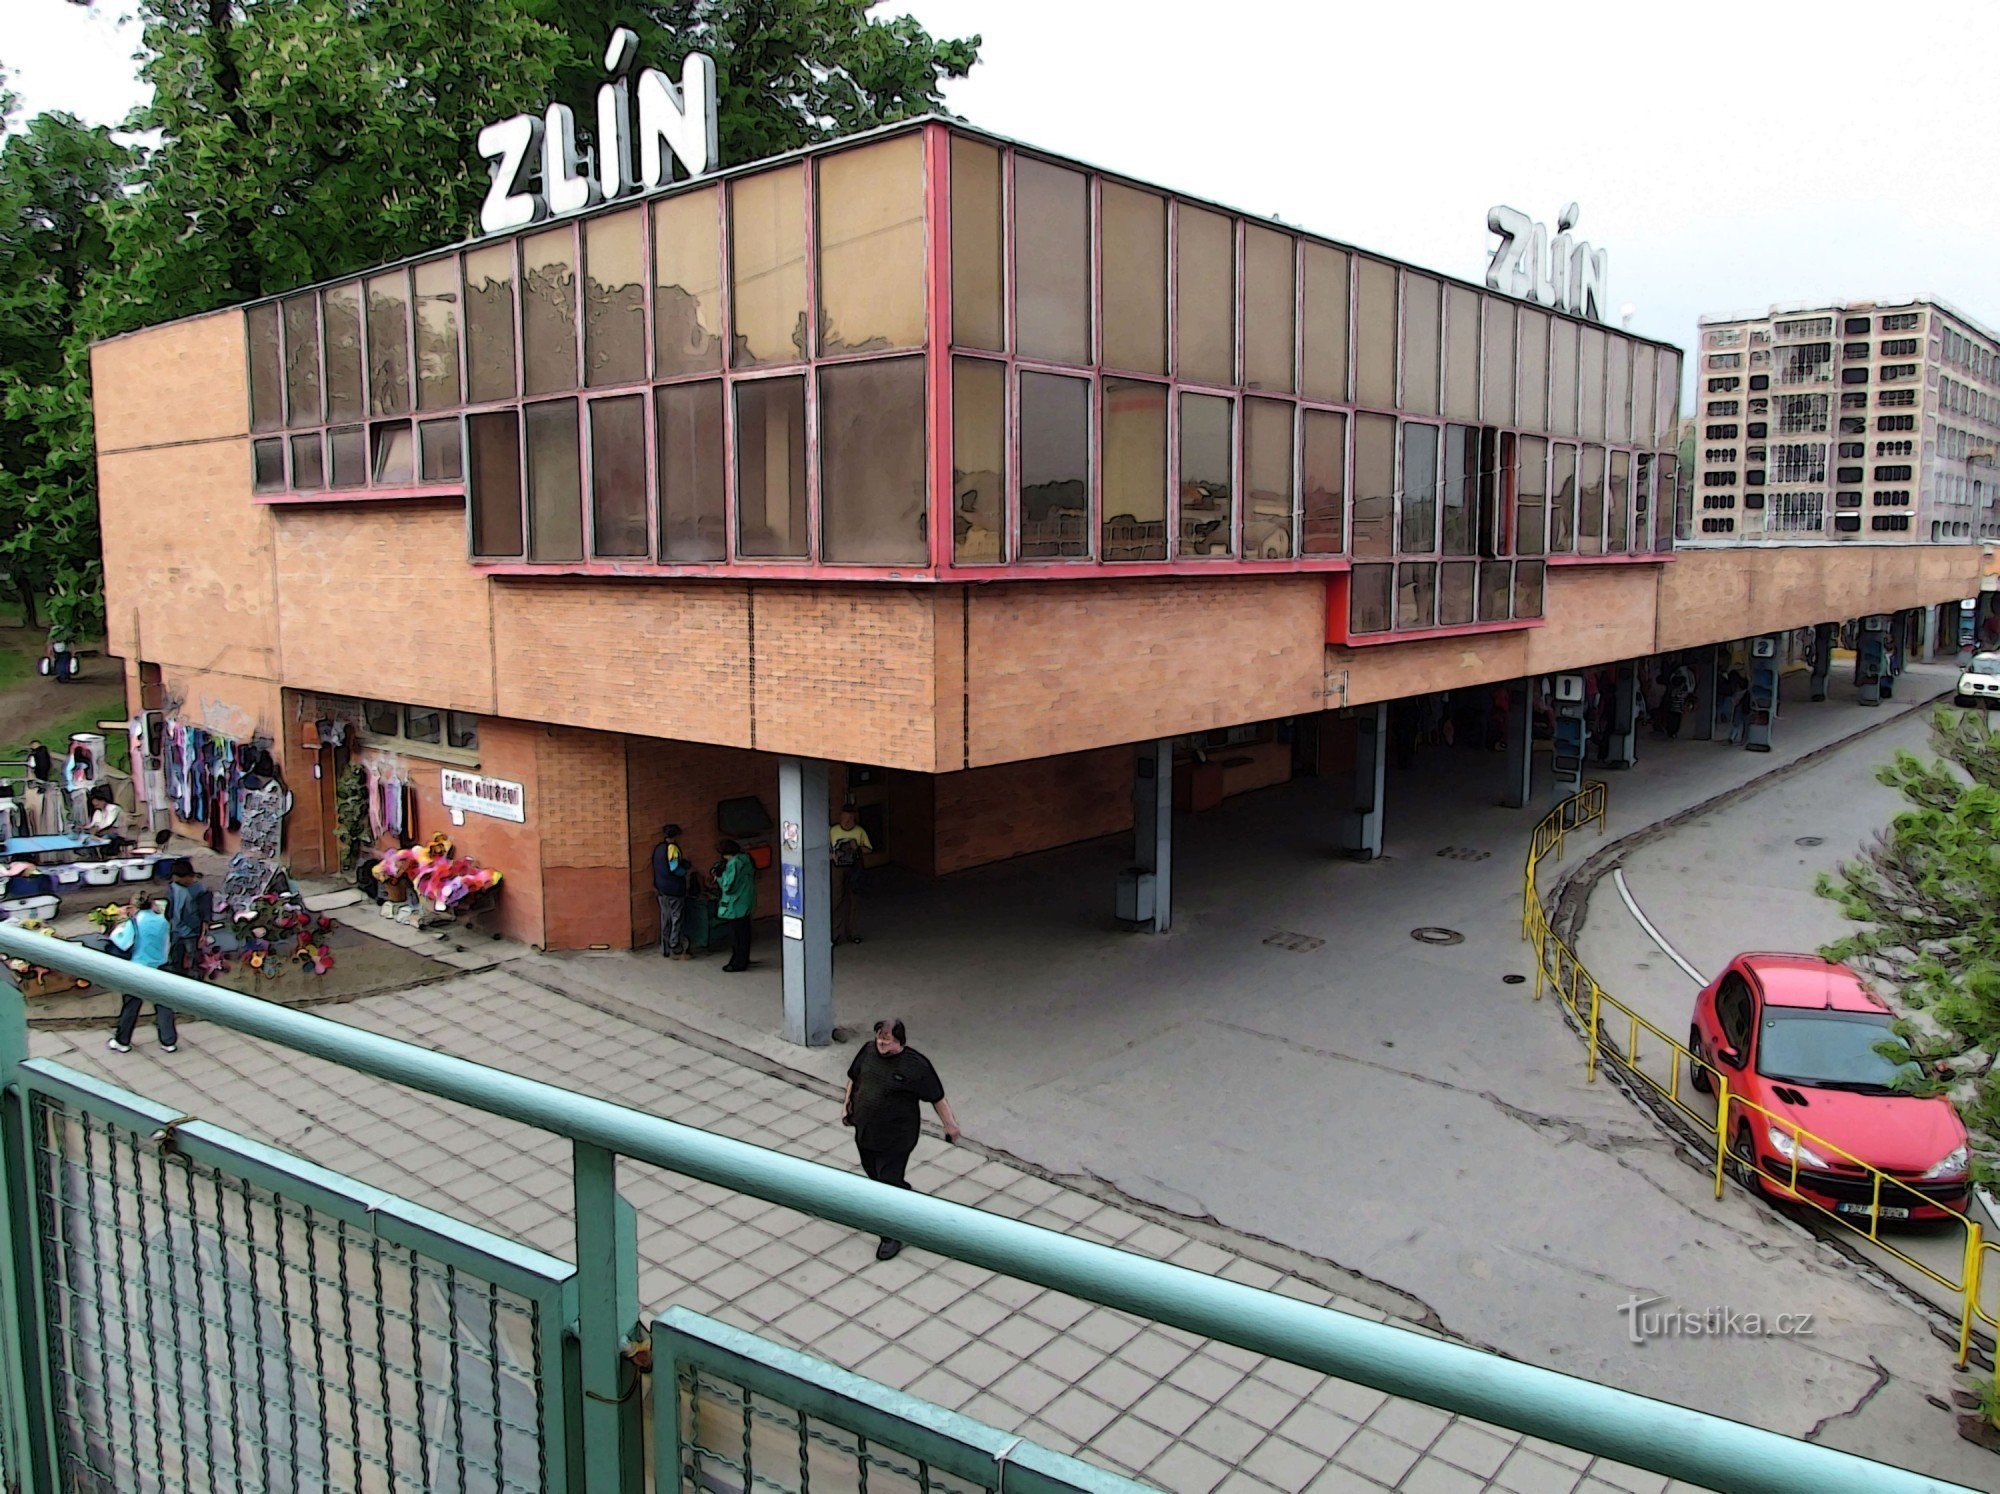 Zlín bus station